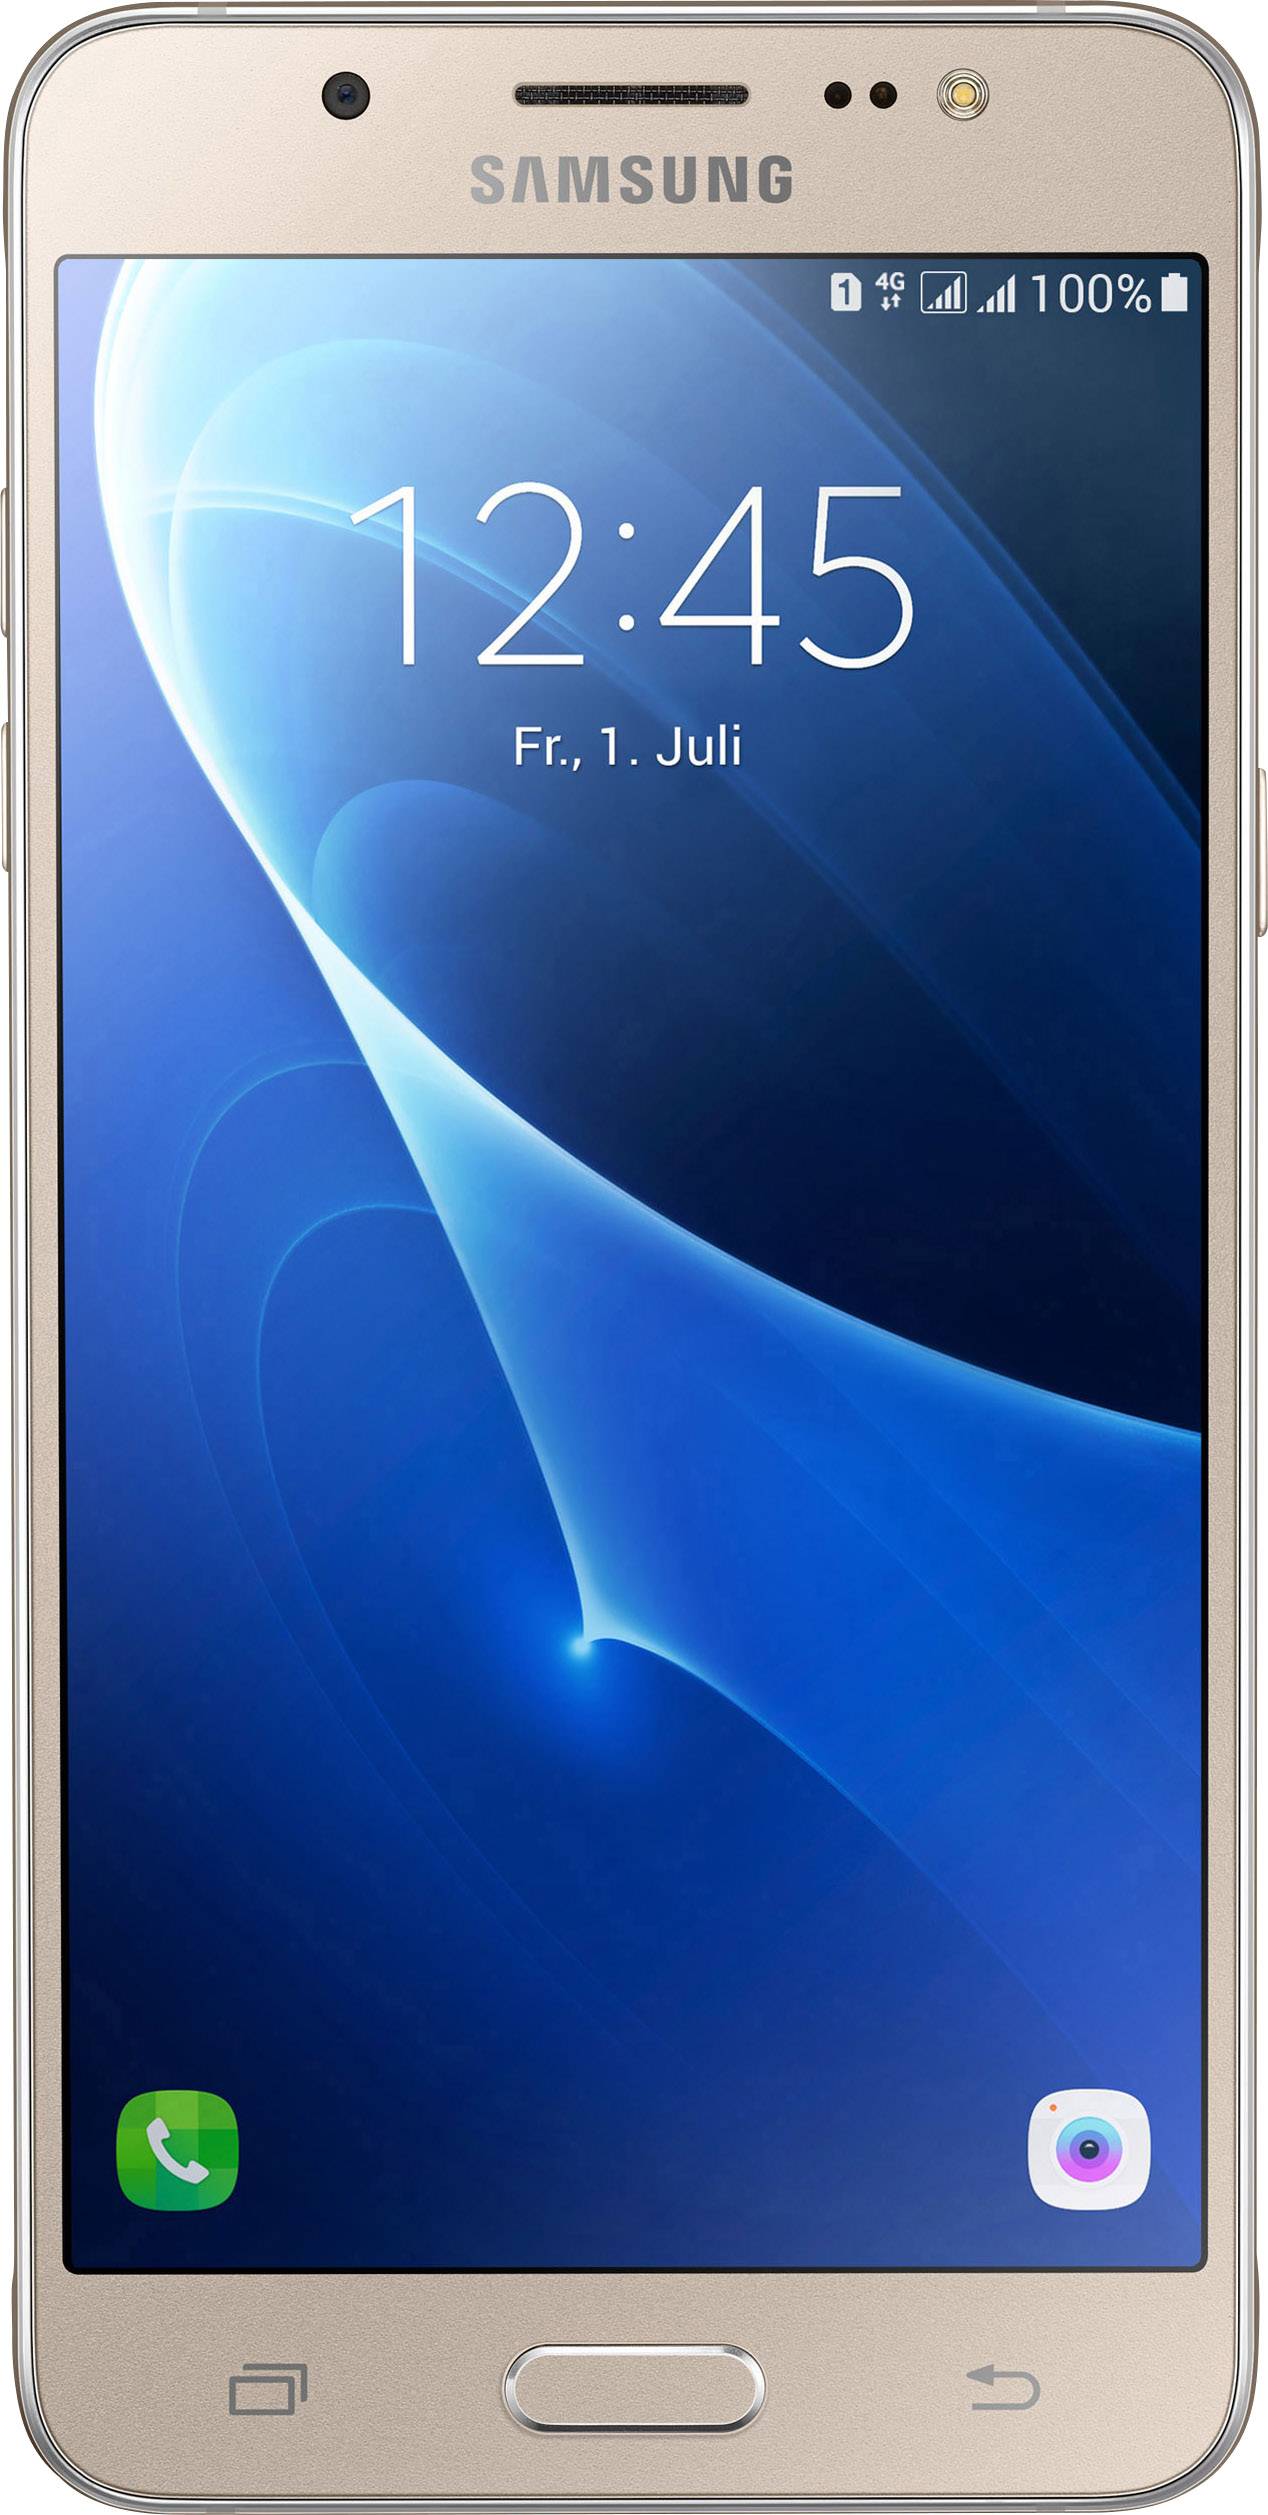 Samsung Galaxy J5 Duos Smartphone () Dual SIM Gold Conrad.com